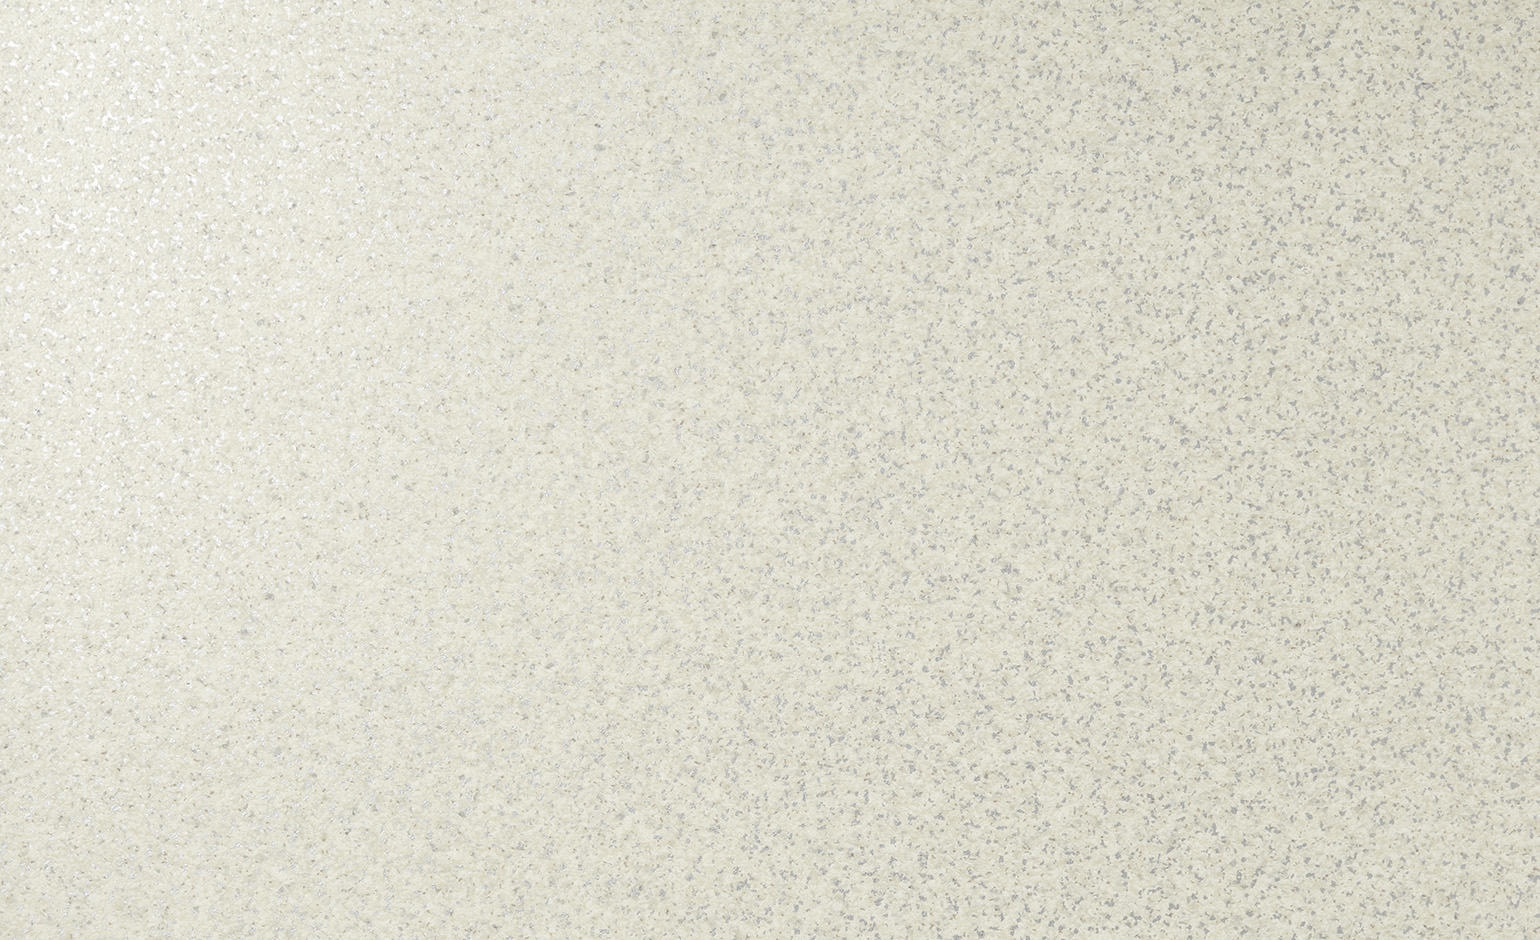 Sol vinyle rouleau PROJECT Tarkett, Motif motif moucheté blanc, rouleau 4.00 m